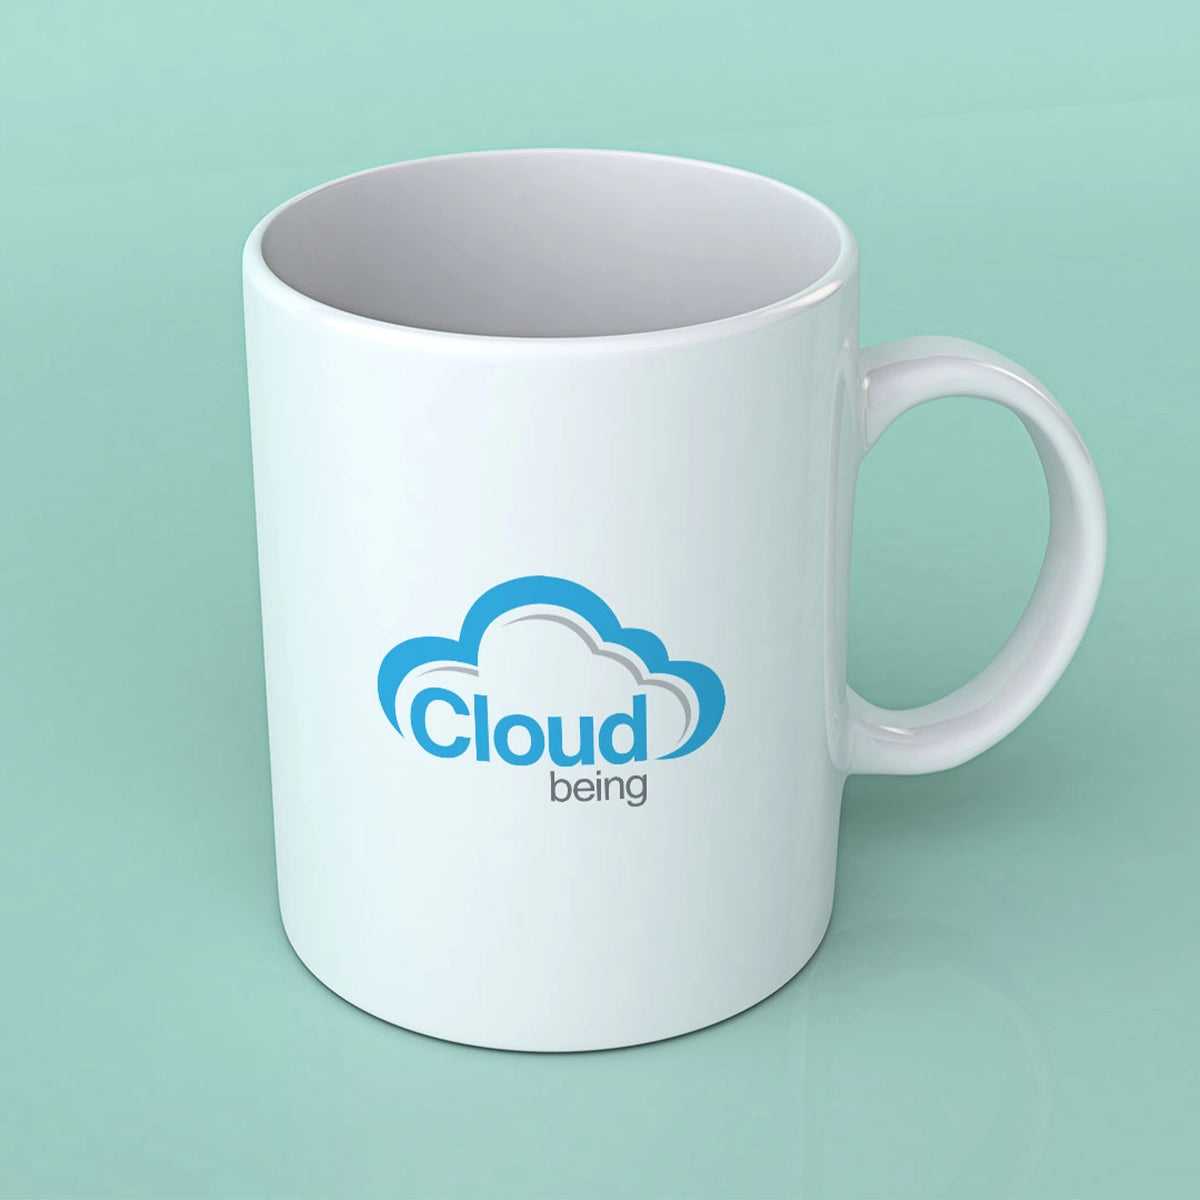 cloudbeing.com